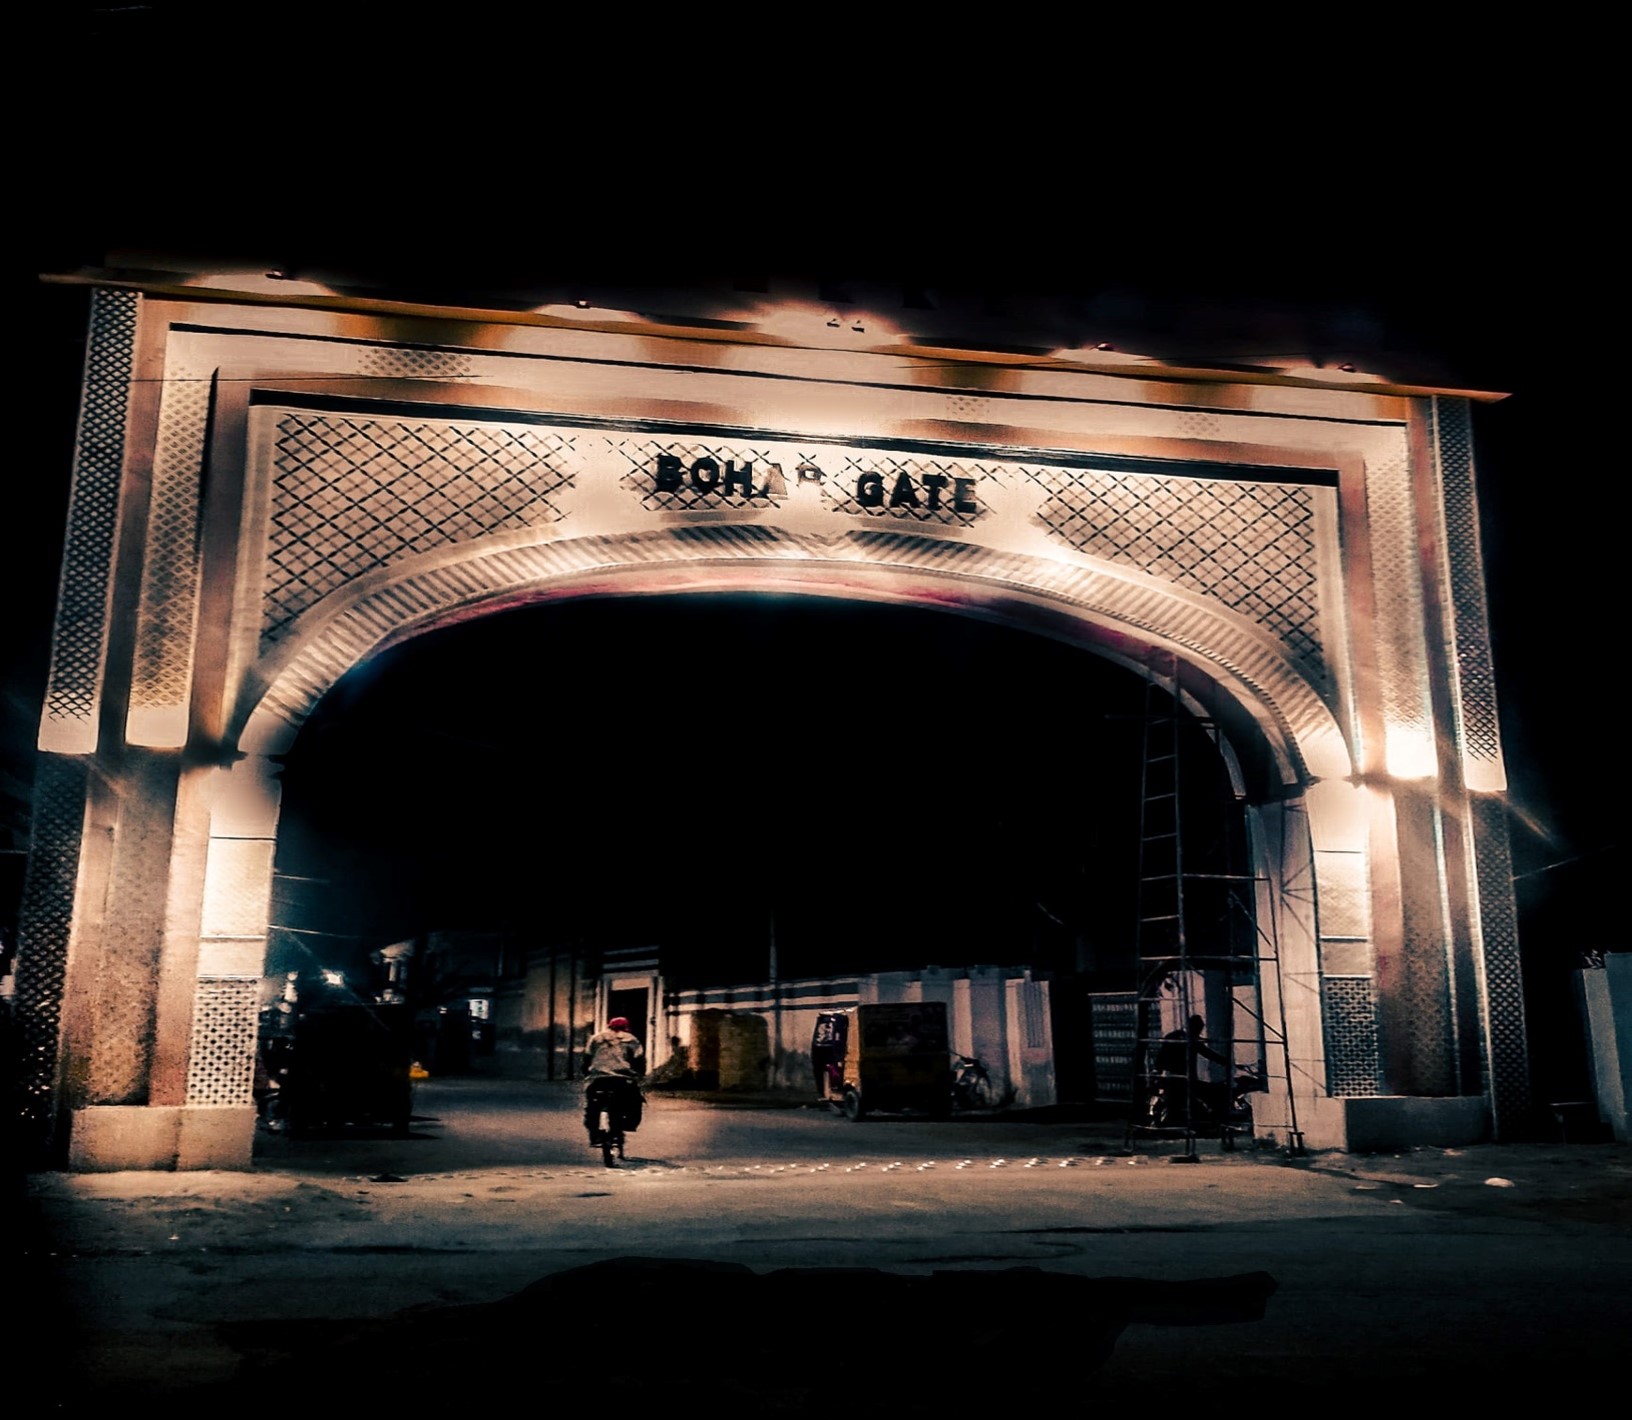 Bohar Gate